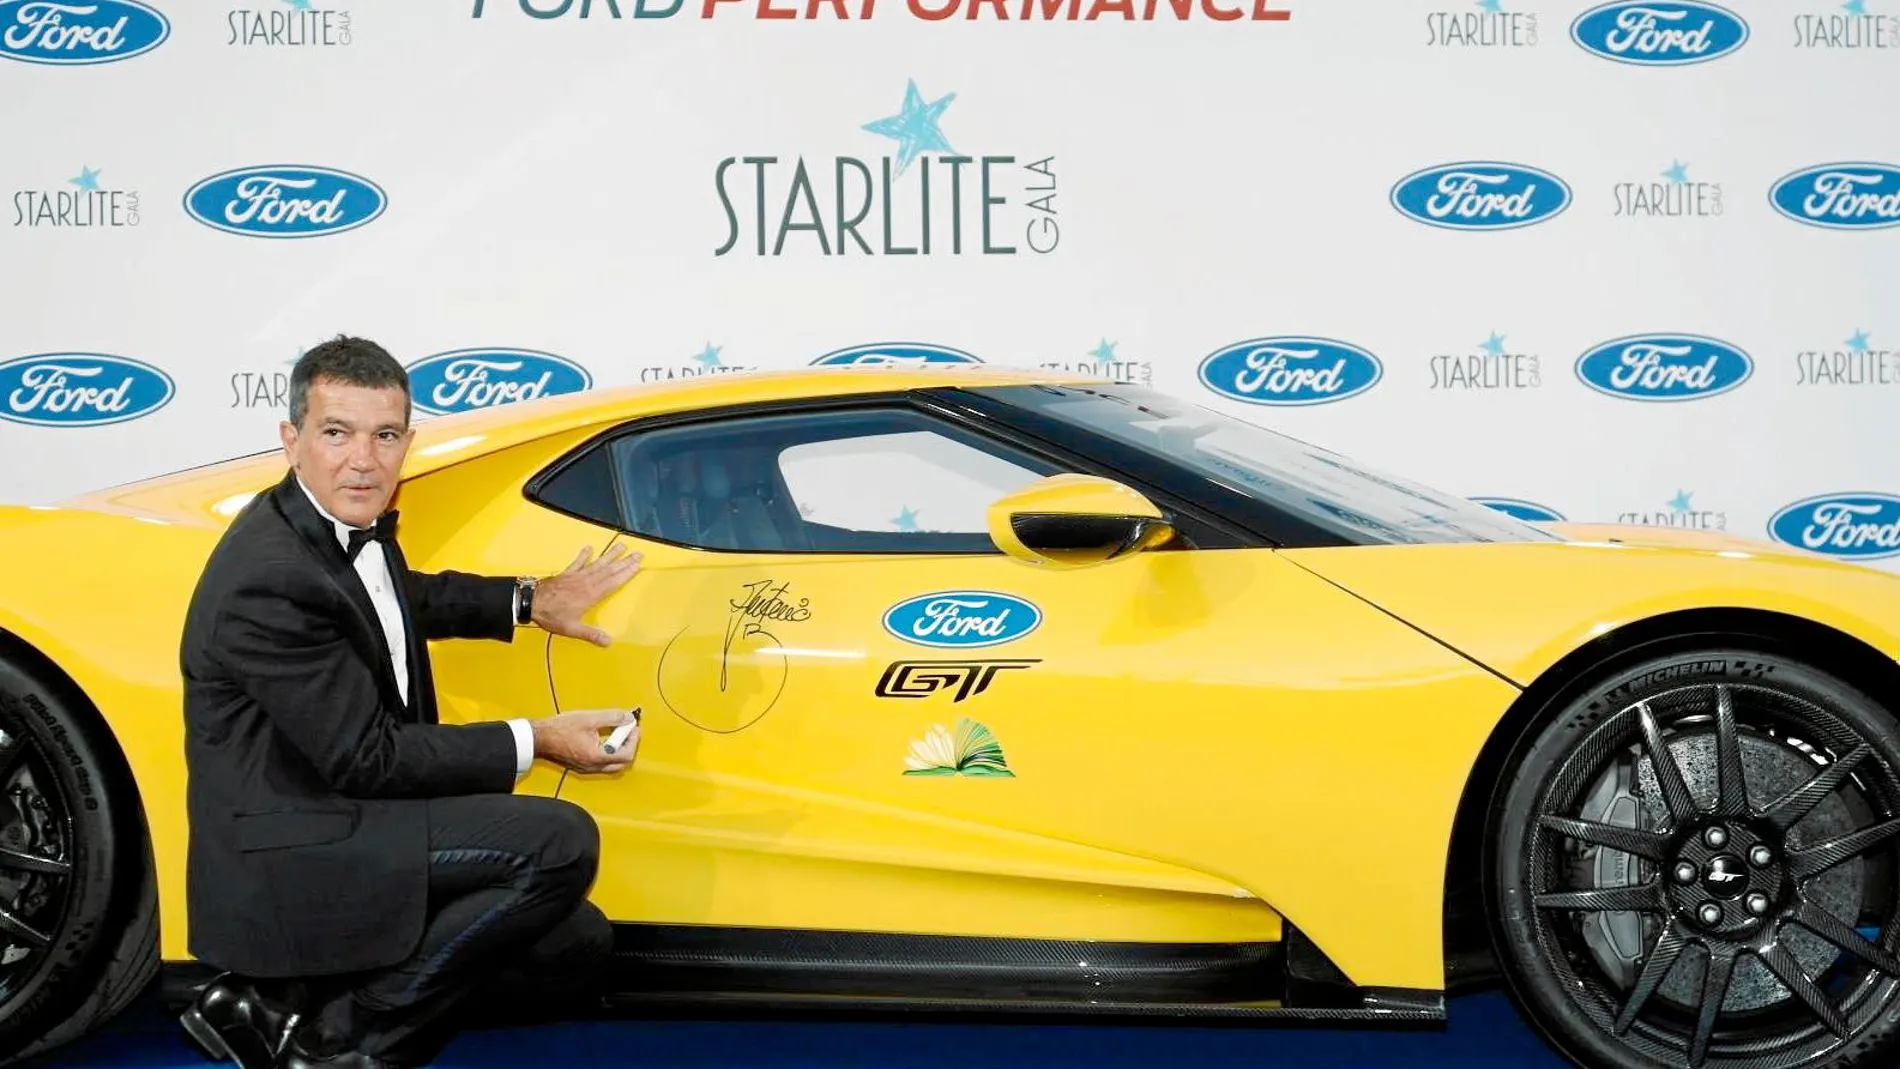 Antonio Banderas firmando el Ford GT en Starlite